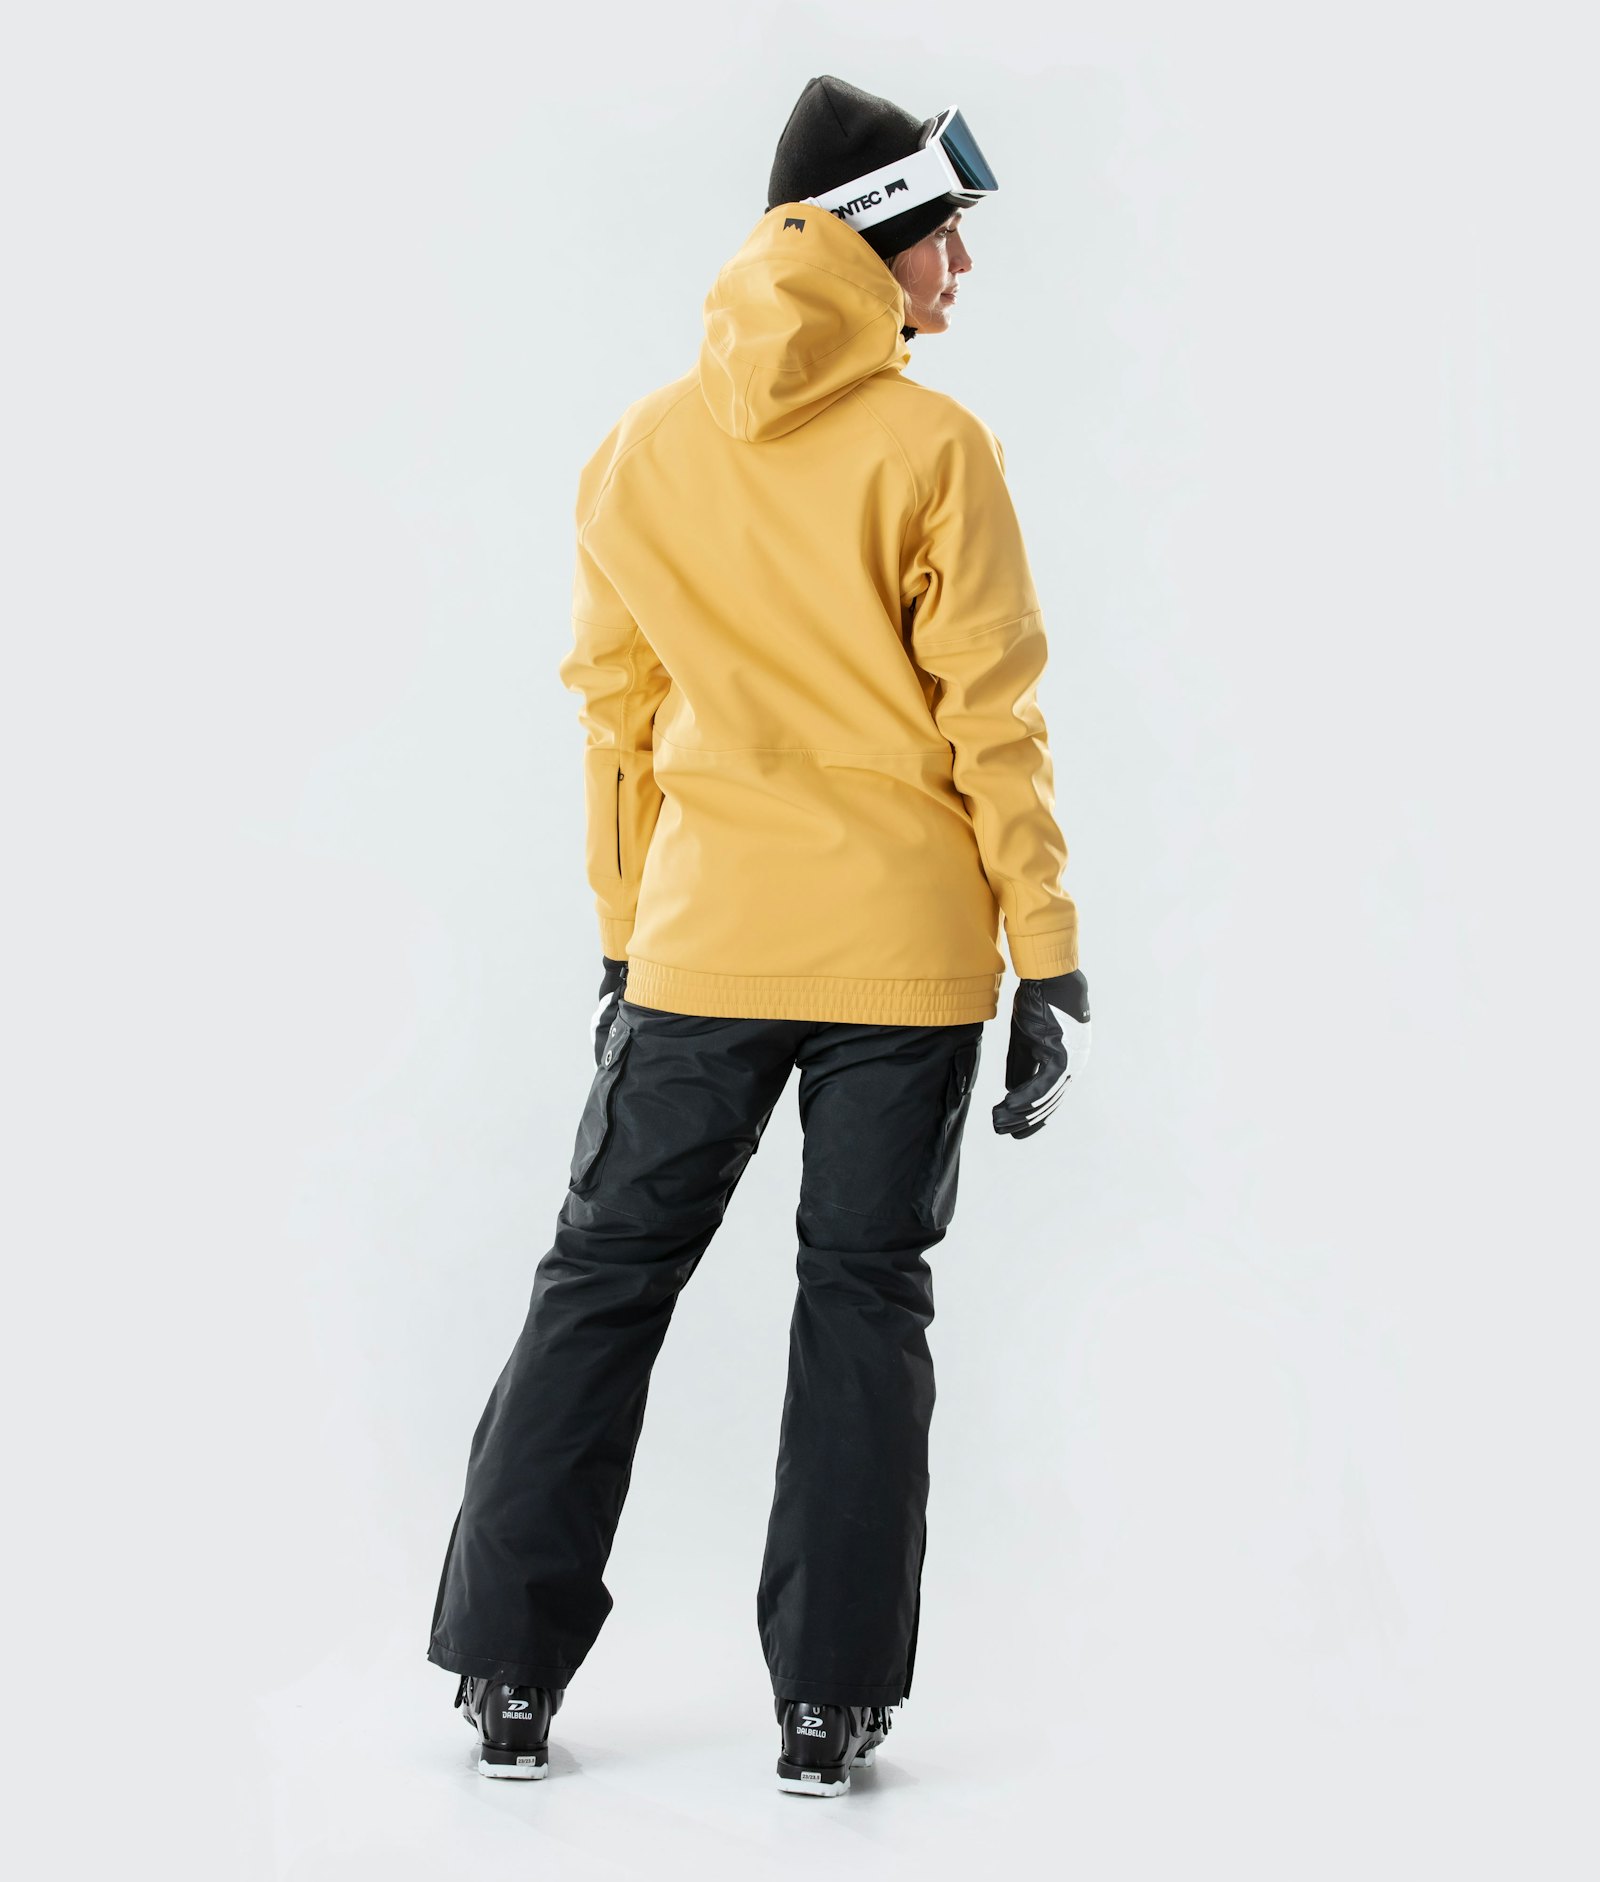 Montec Tempest W 2020 Ski jas Dames Yellow